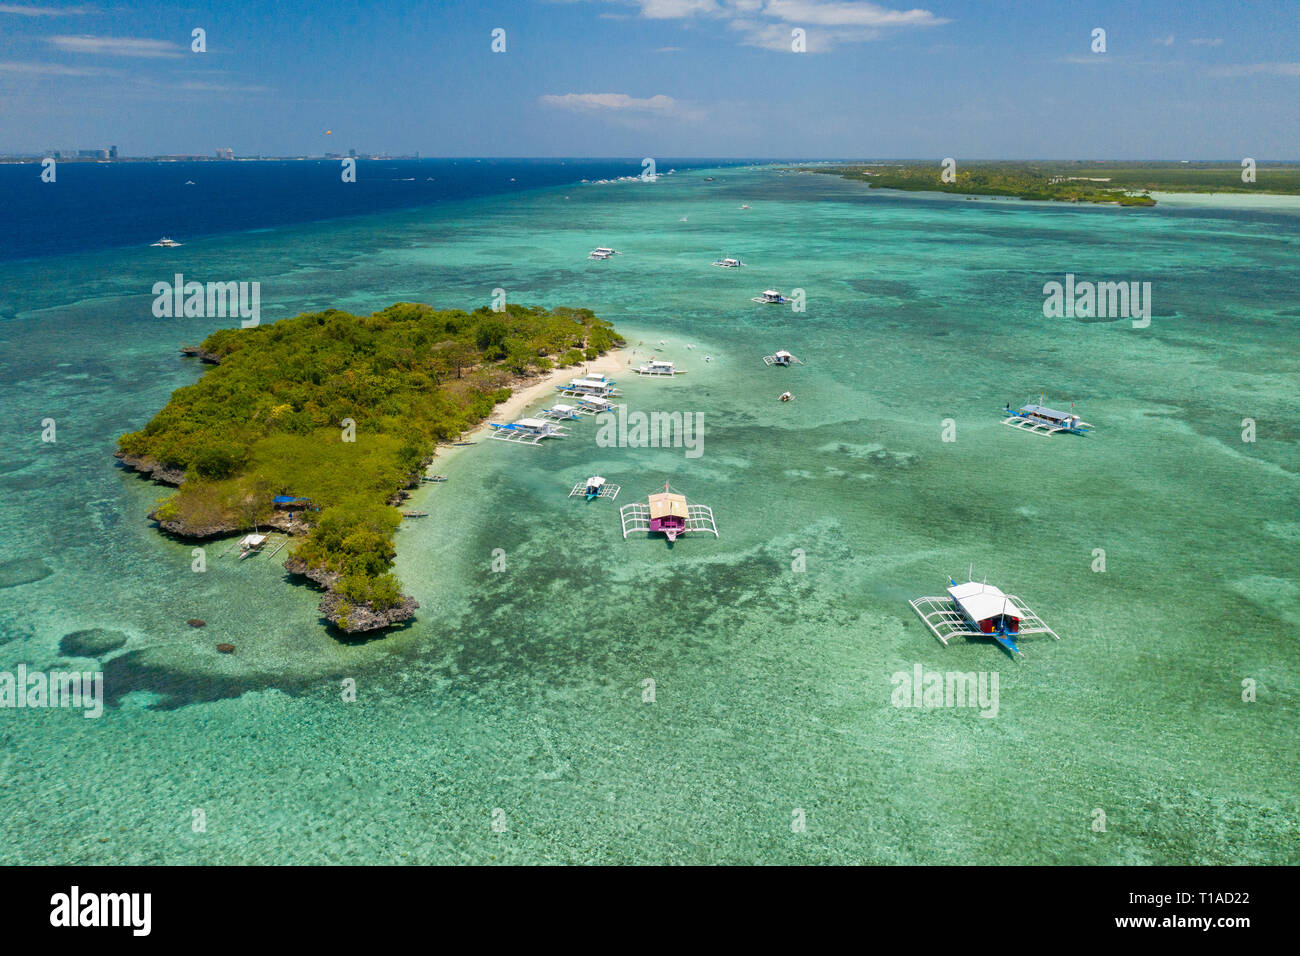 Sulpa îlot situé au large de l'île Mactan dans la province de Cebu est une destination populaire pour les îles voisines pour les habitants et les voyageurs internationaux.J Banque D'Images